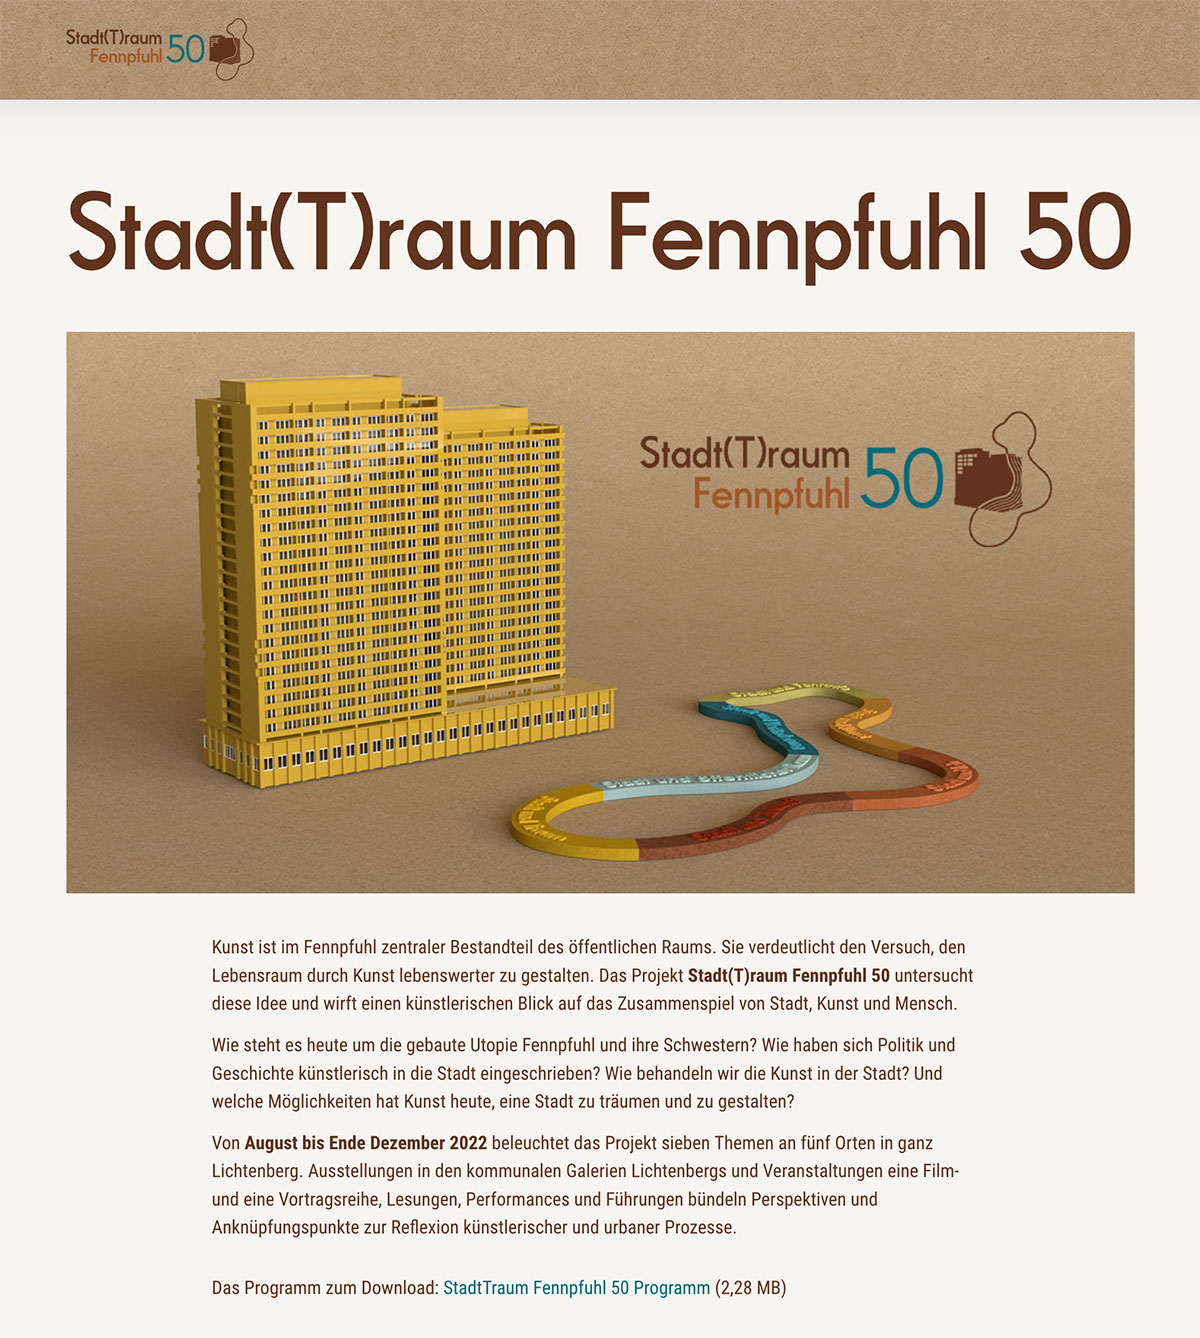 stadt-traum-fennpfuhl-50